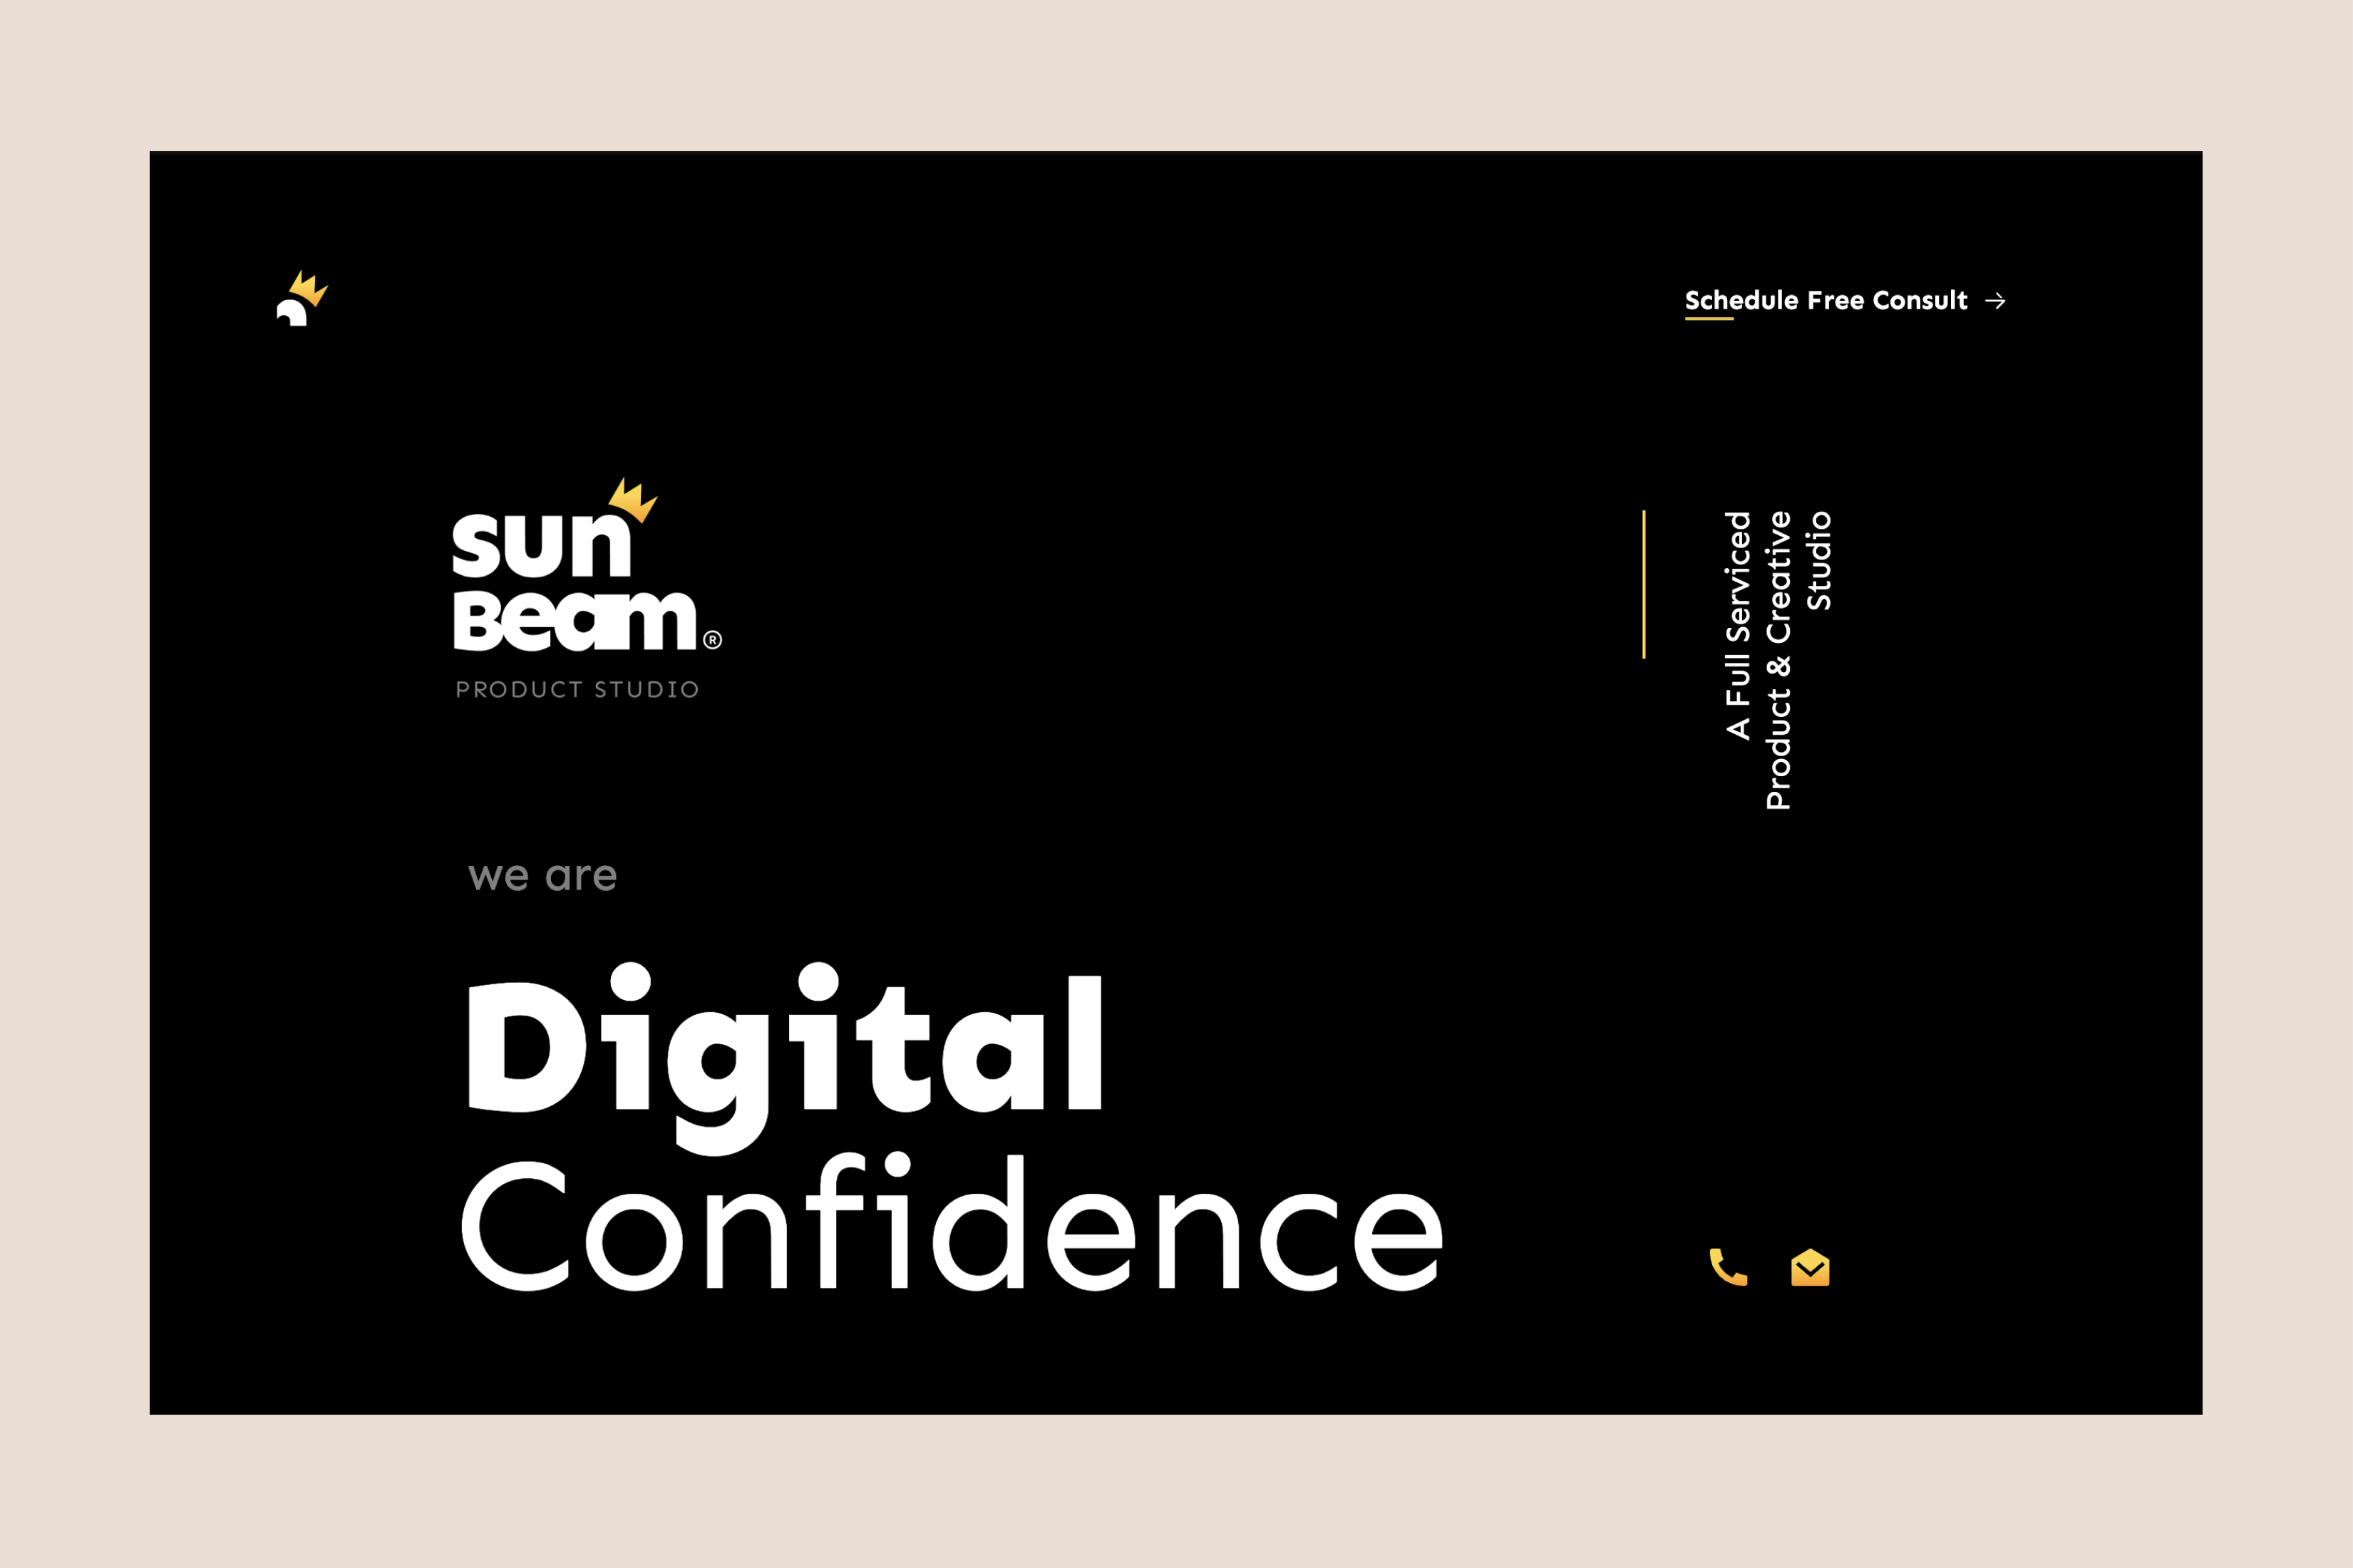 Sunbeam 
website